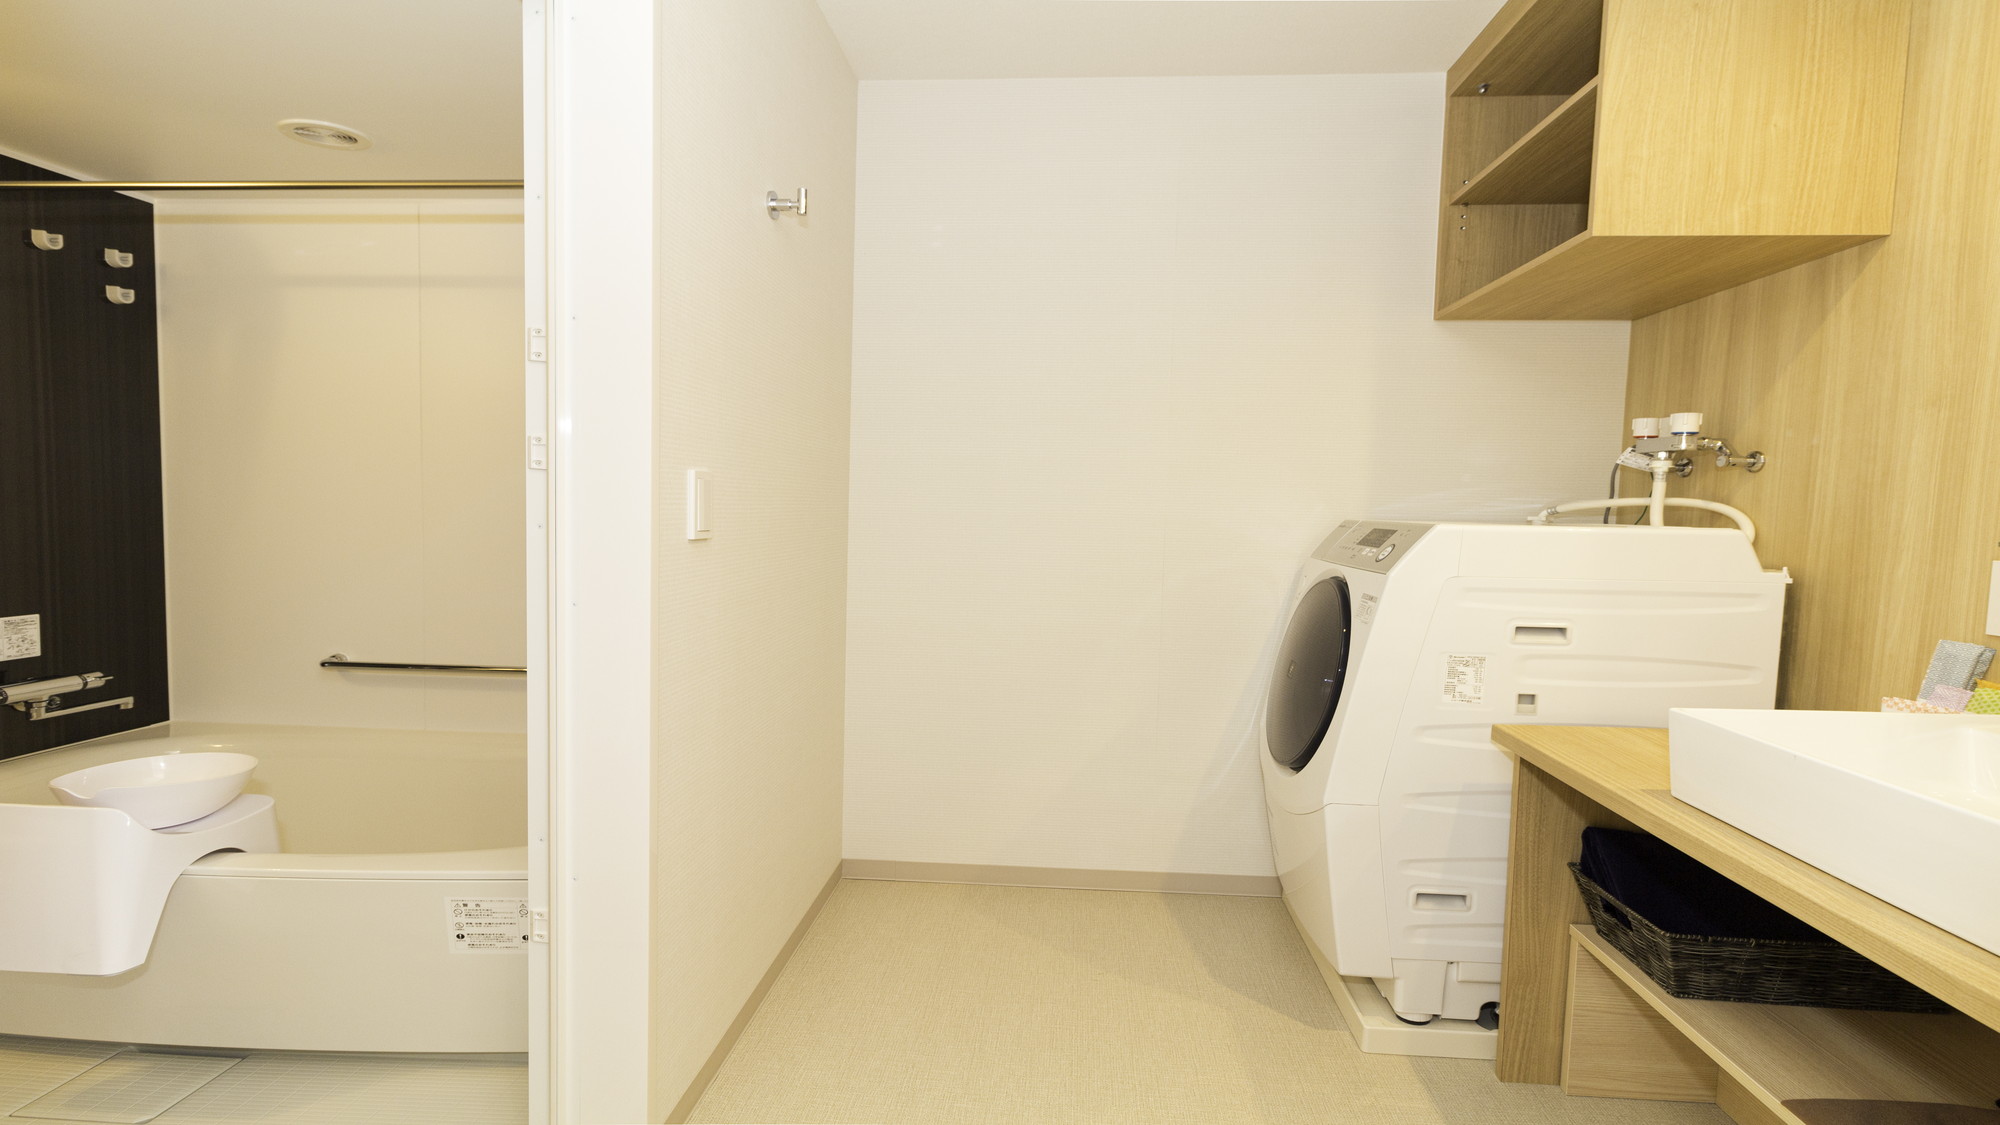 レジデンシャルルームは、キッチン・クローゼットと生活家電(洗濯乾燥機・冷蔵庫・掃除機等)が備え付け